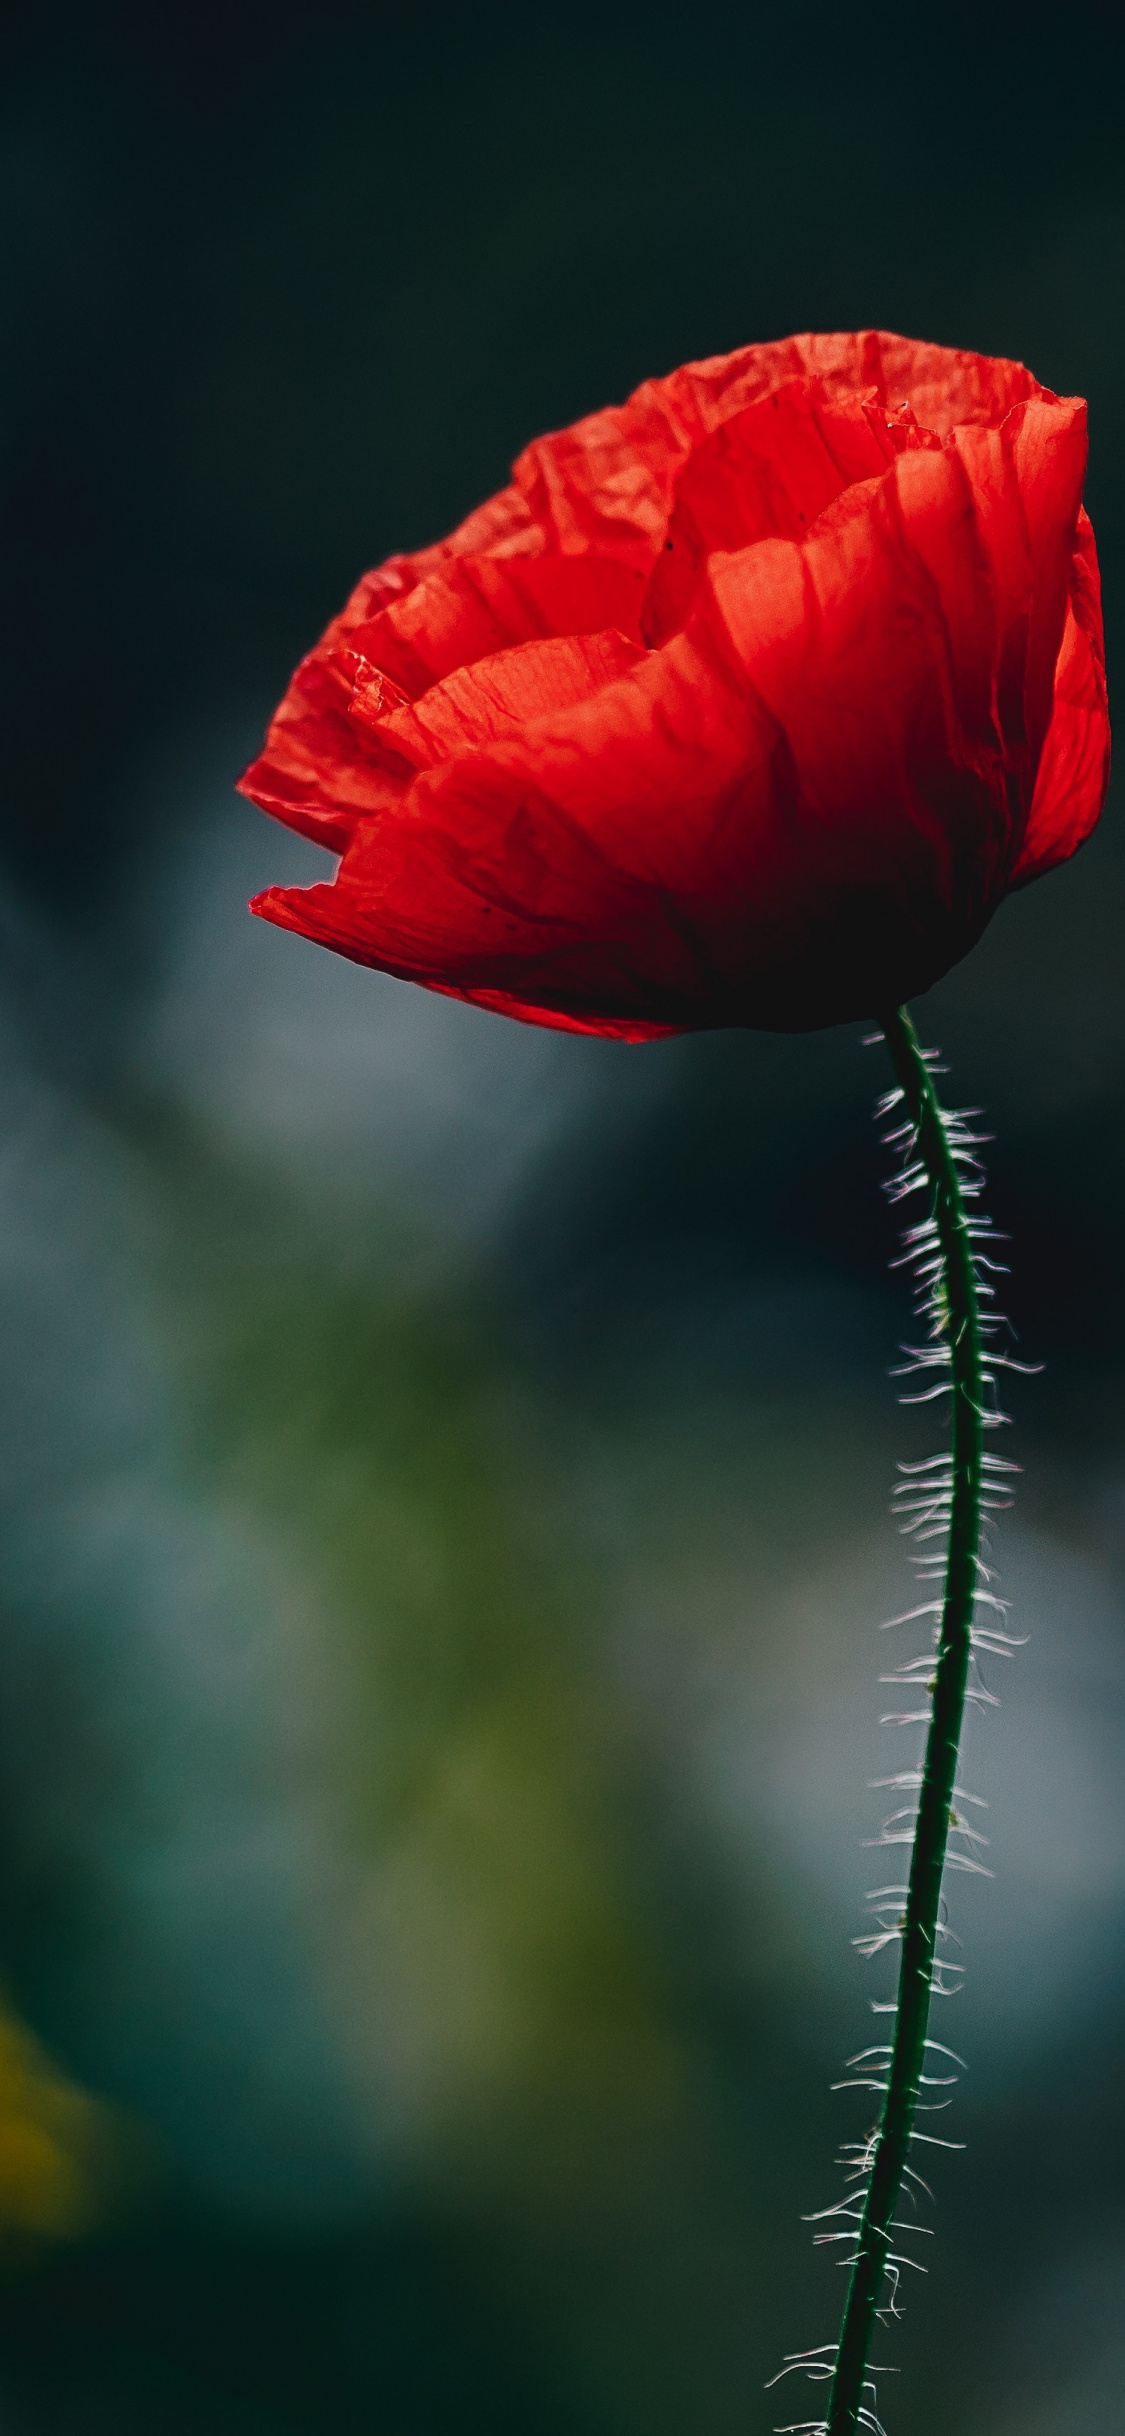 Red Flower in Tilt Shift Lens. Wallpaper in 1125x2436 Resolution